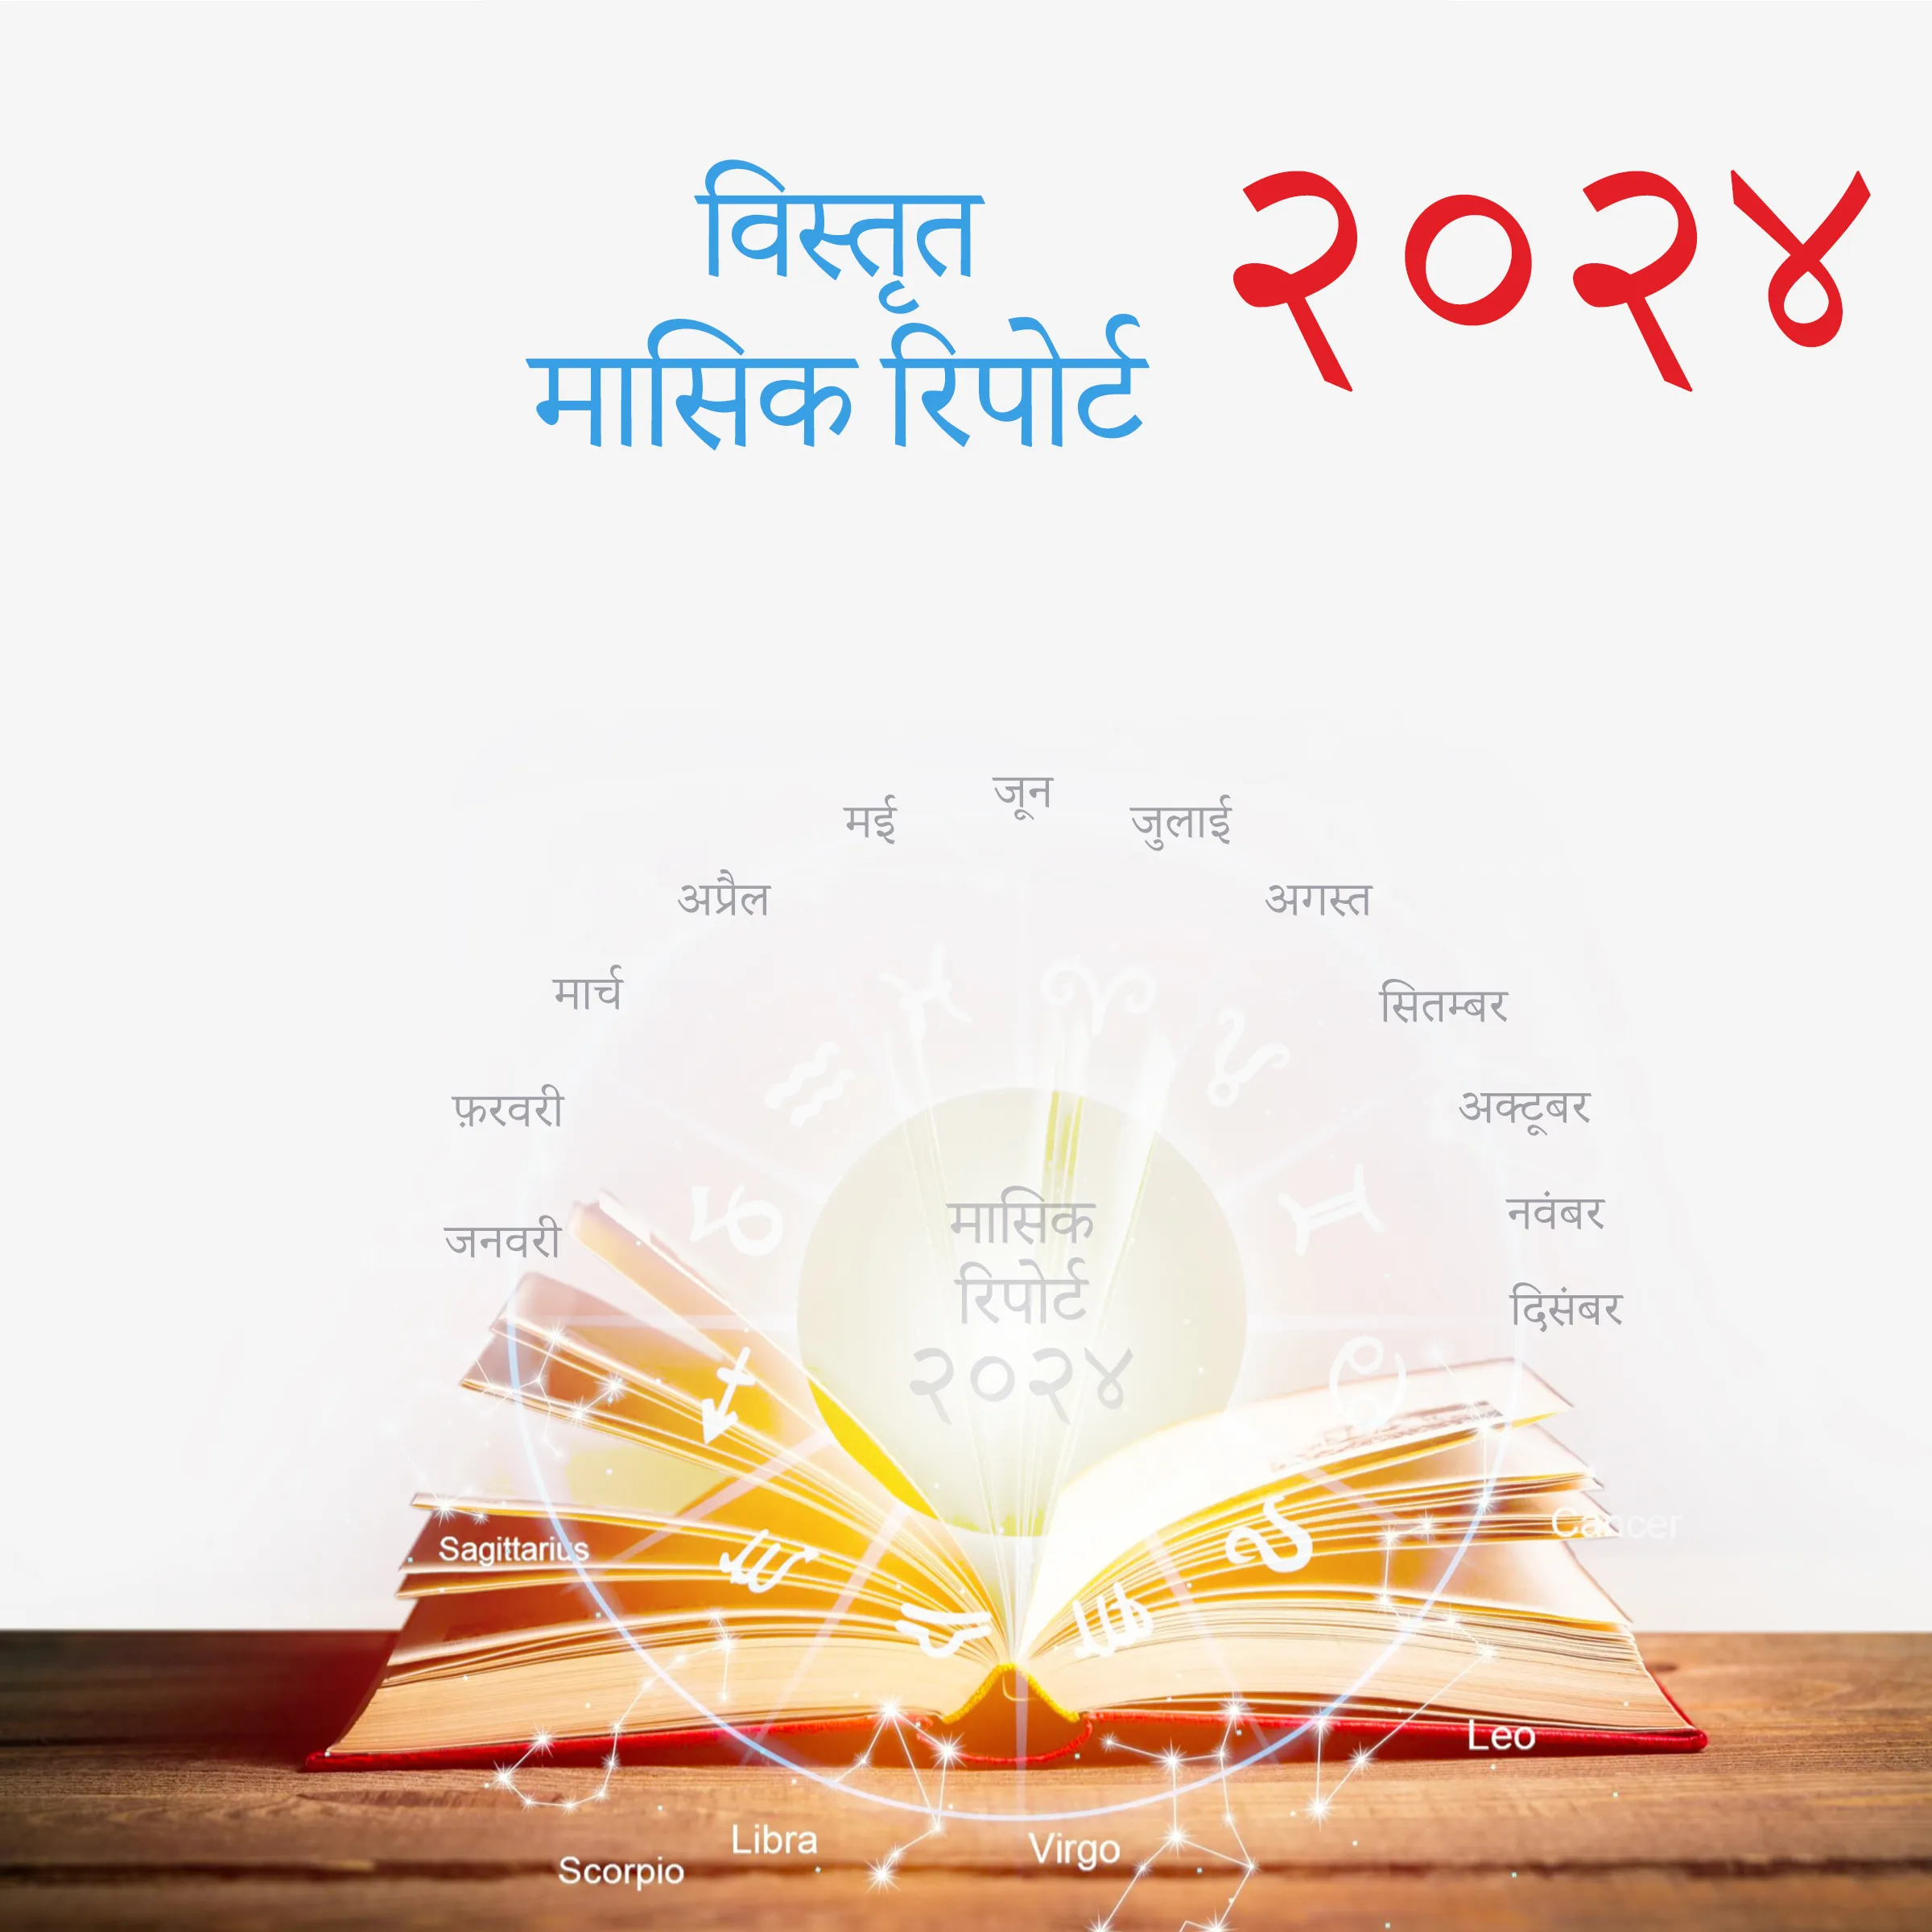 २०२४ विस्तृत मासिक रिपोर्ट – Acharya Bhattacharya